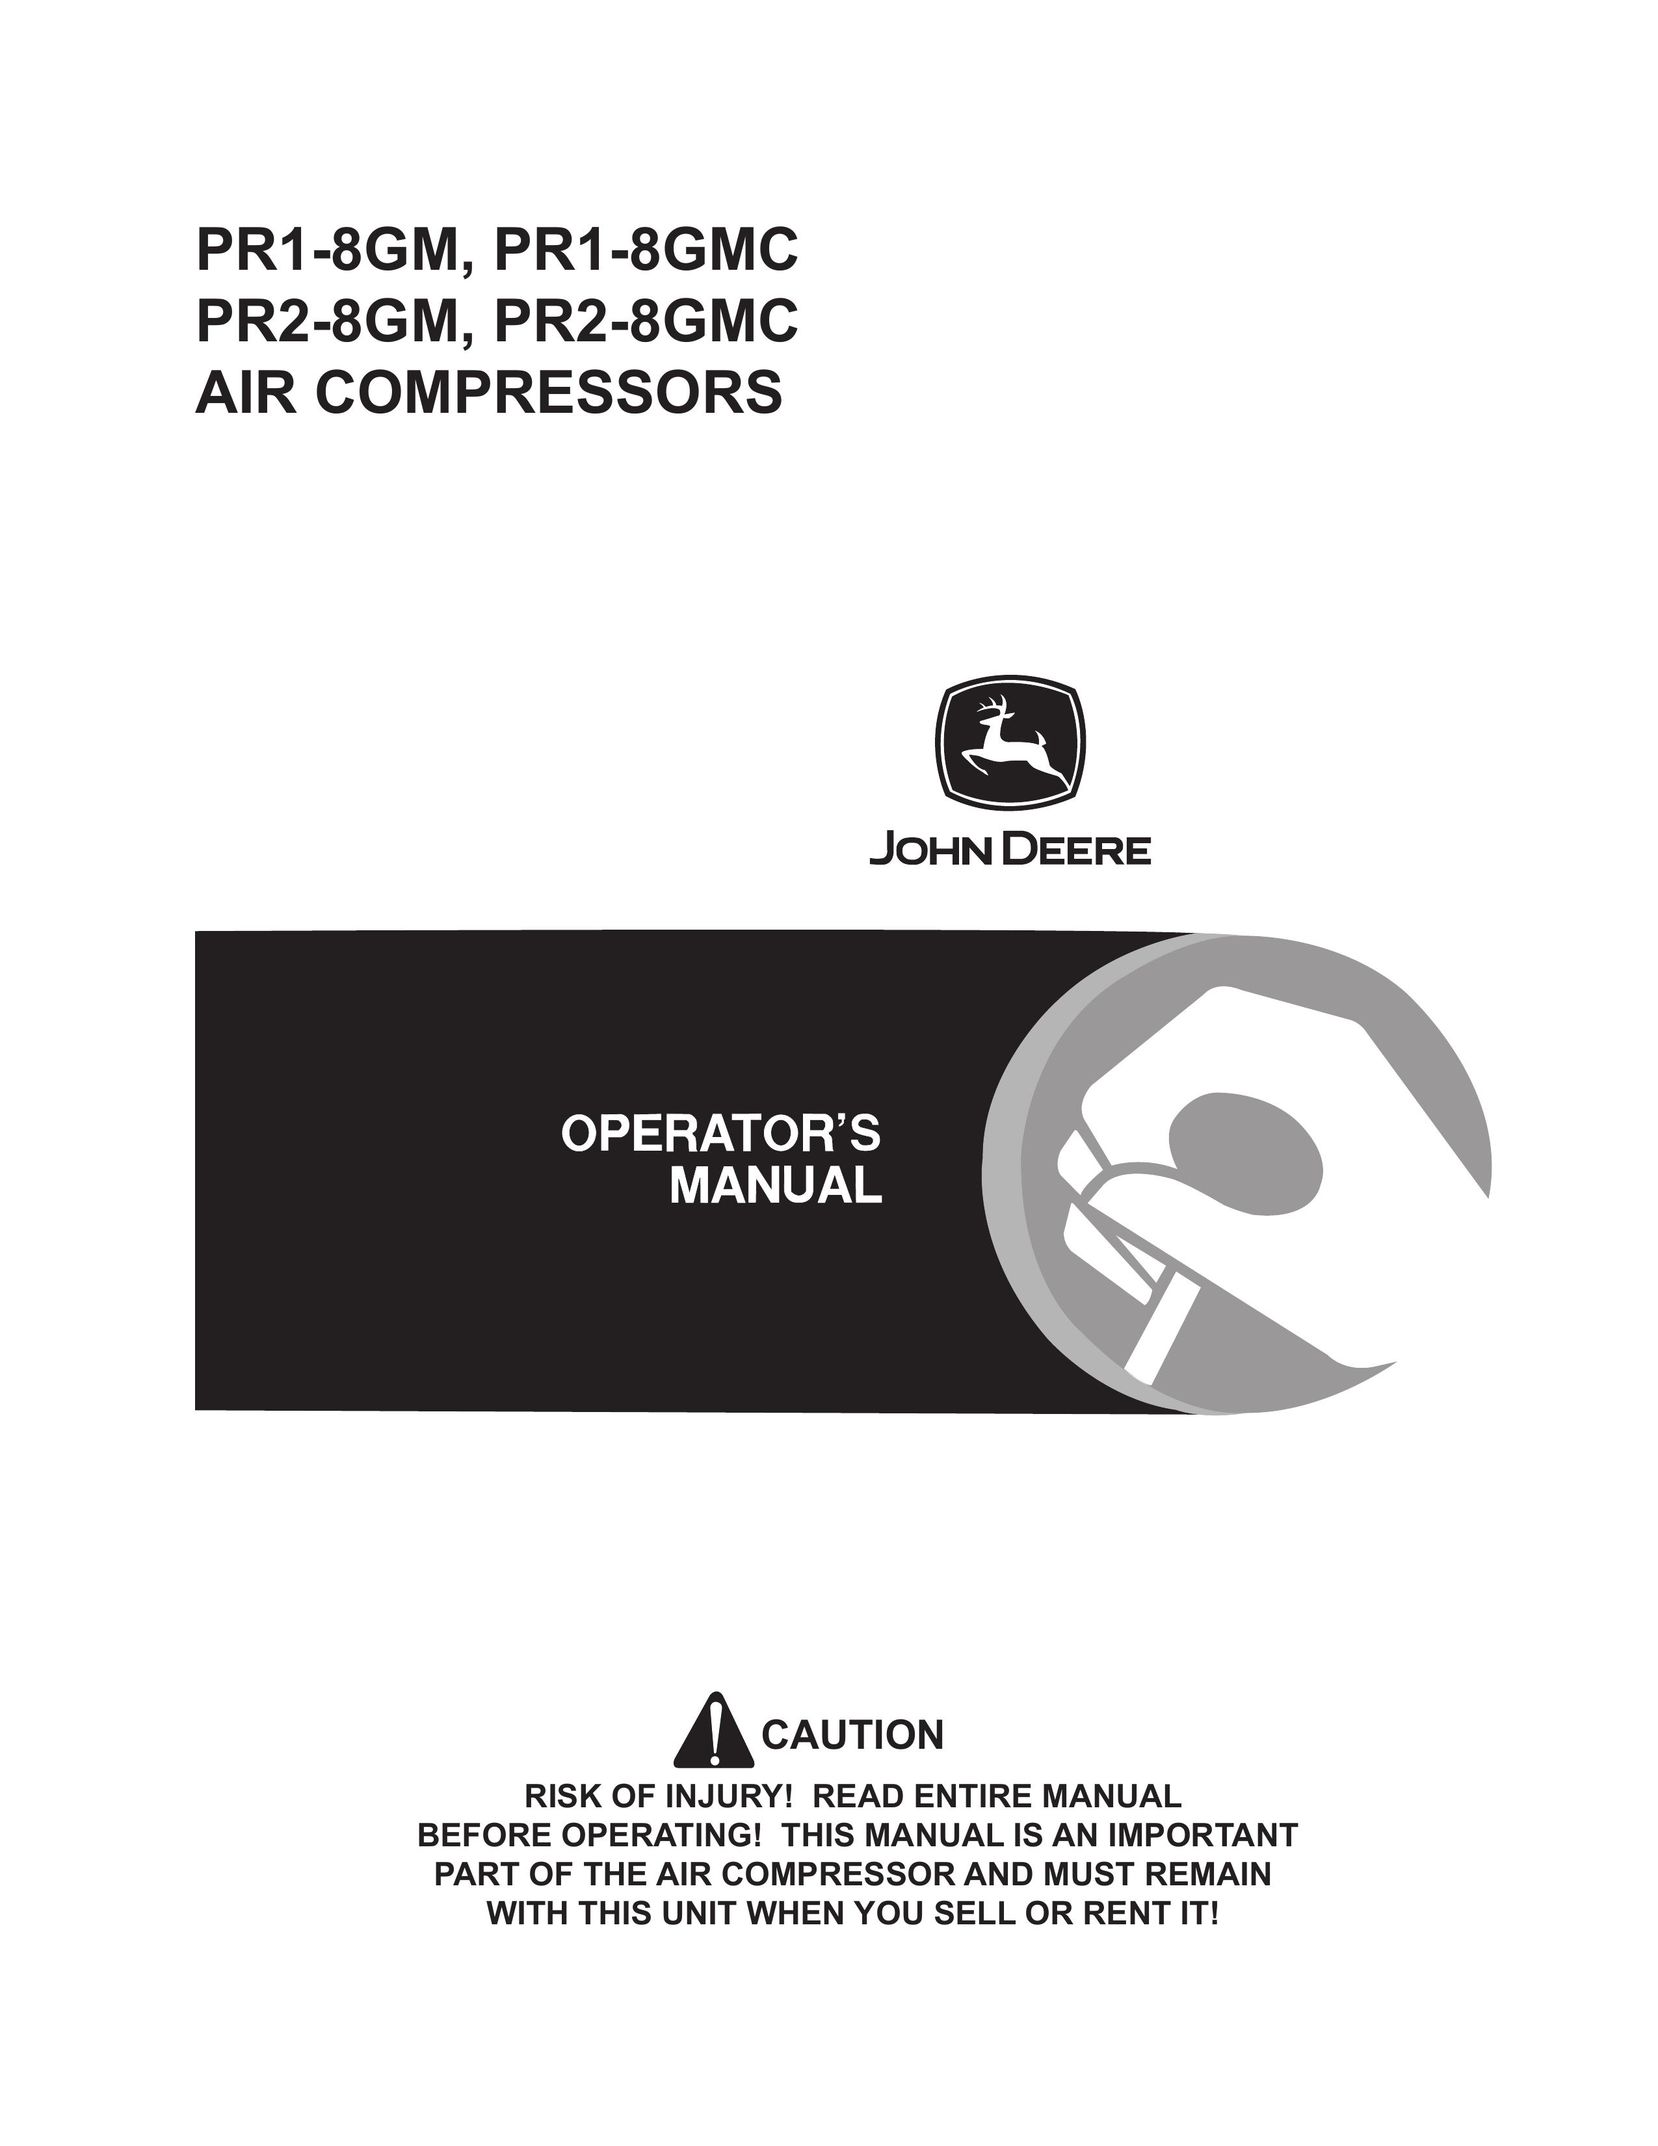 John Deere PR2-8GM Air Compressor User Manual